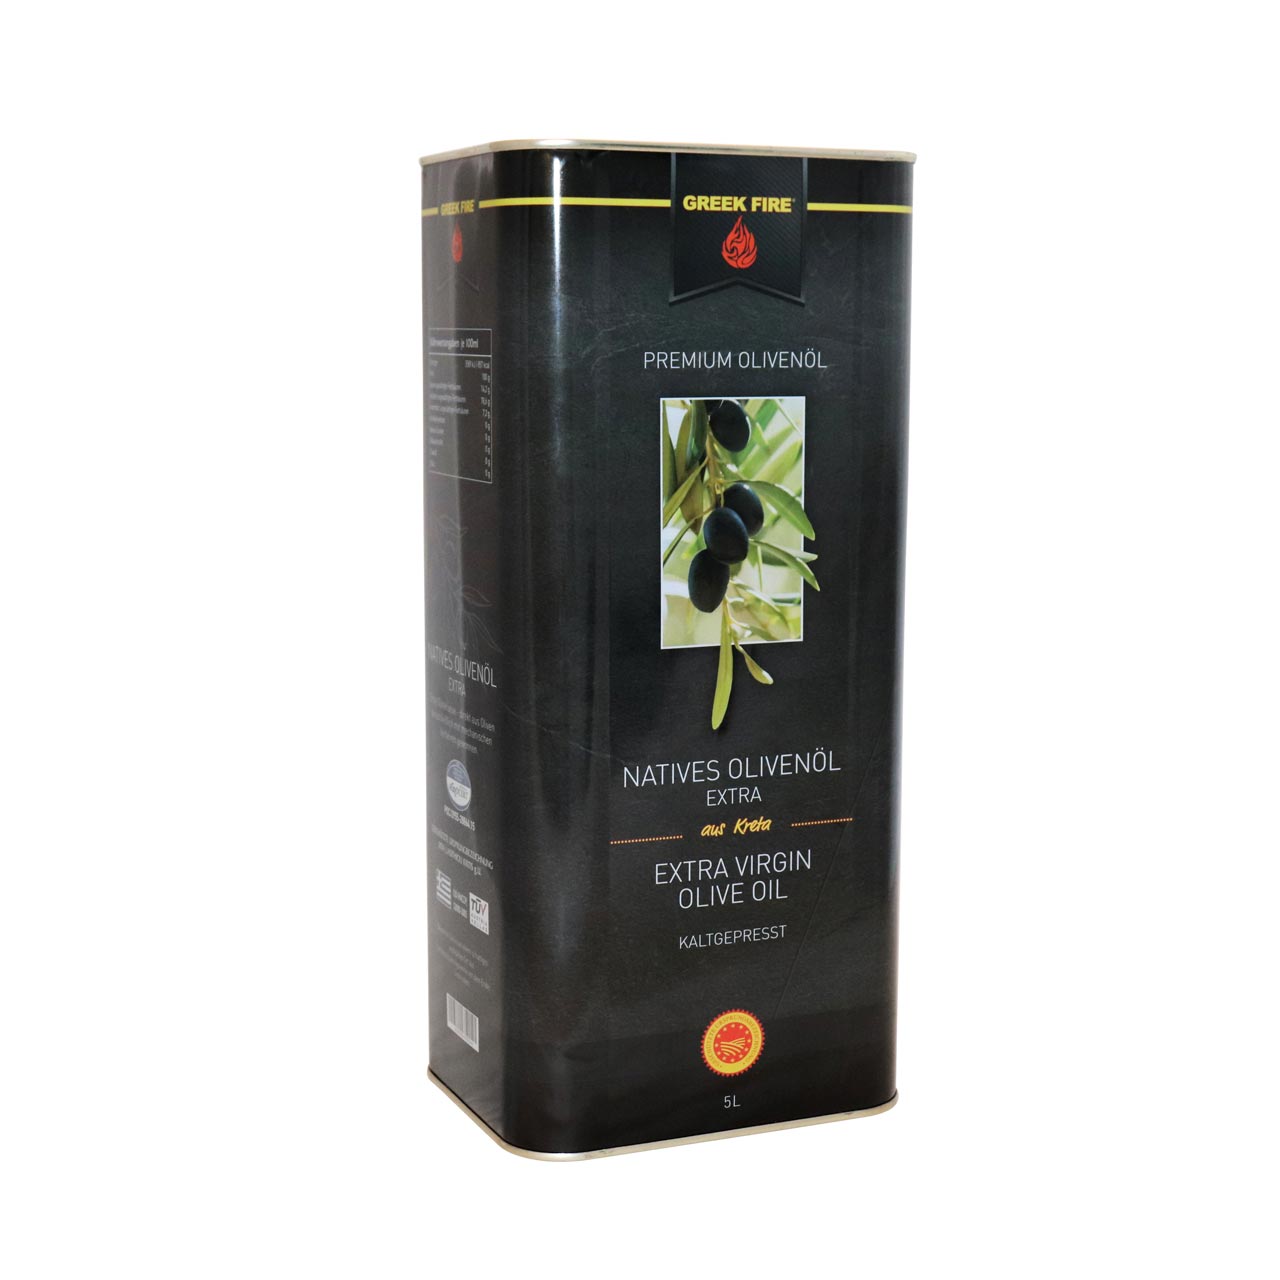 Greek Fire Premium Olivenöl, 500 ml